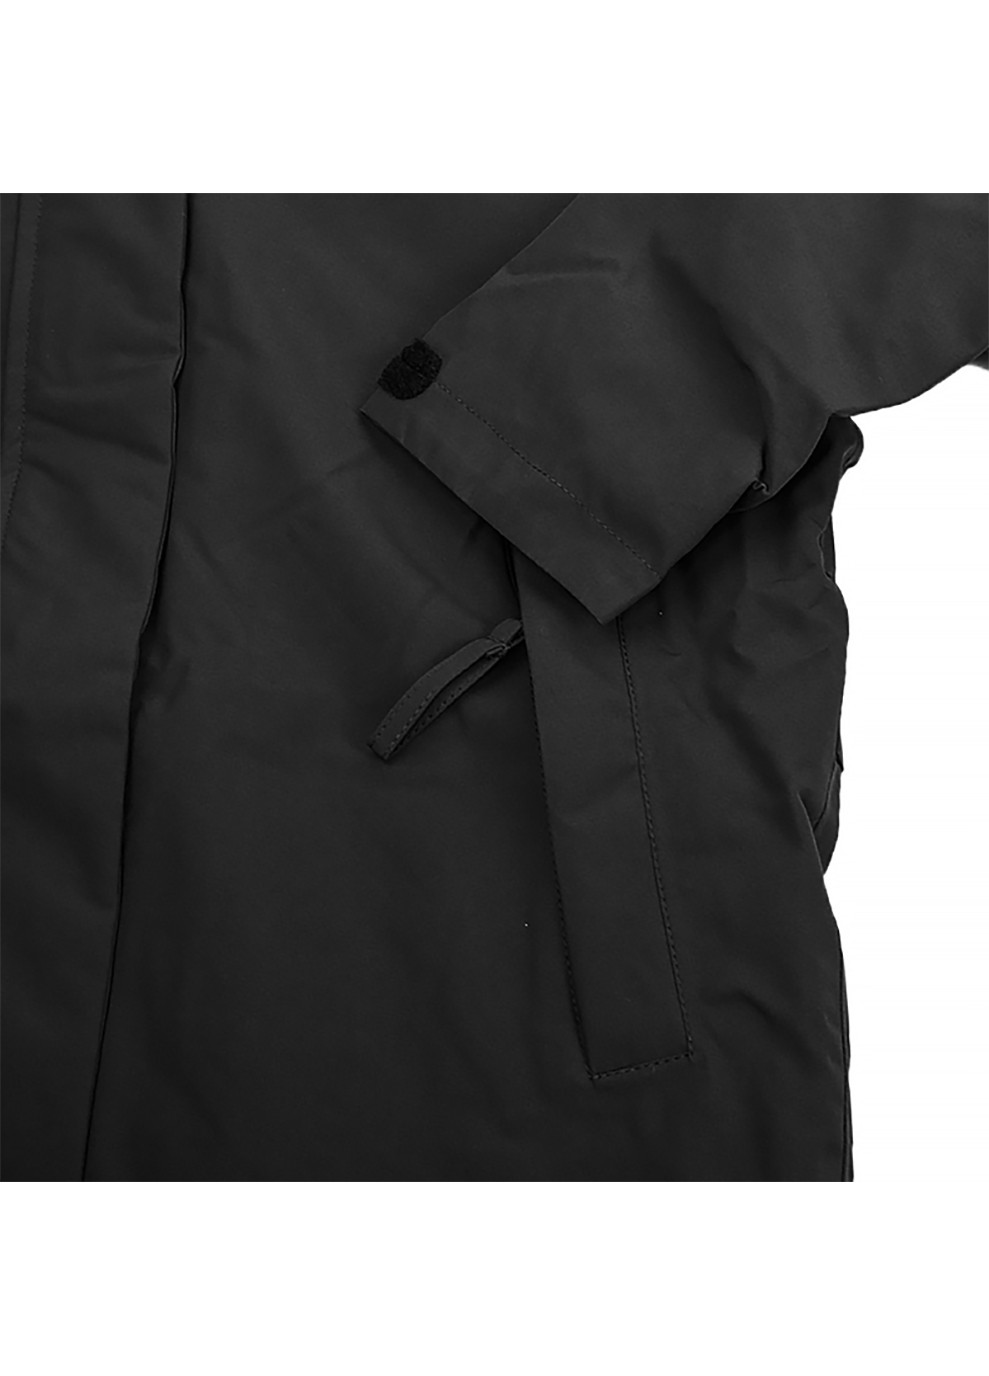 Черная демисезонная женская куртка w mono material ins rain coat черный Helly Hansen